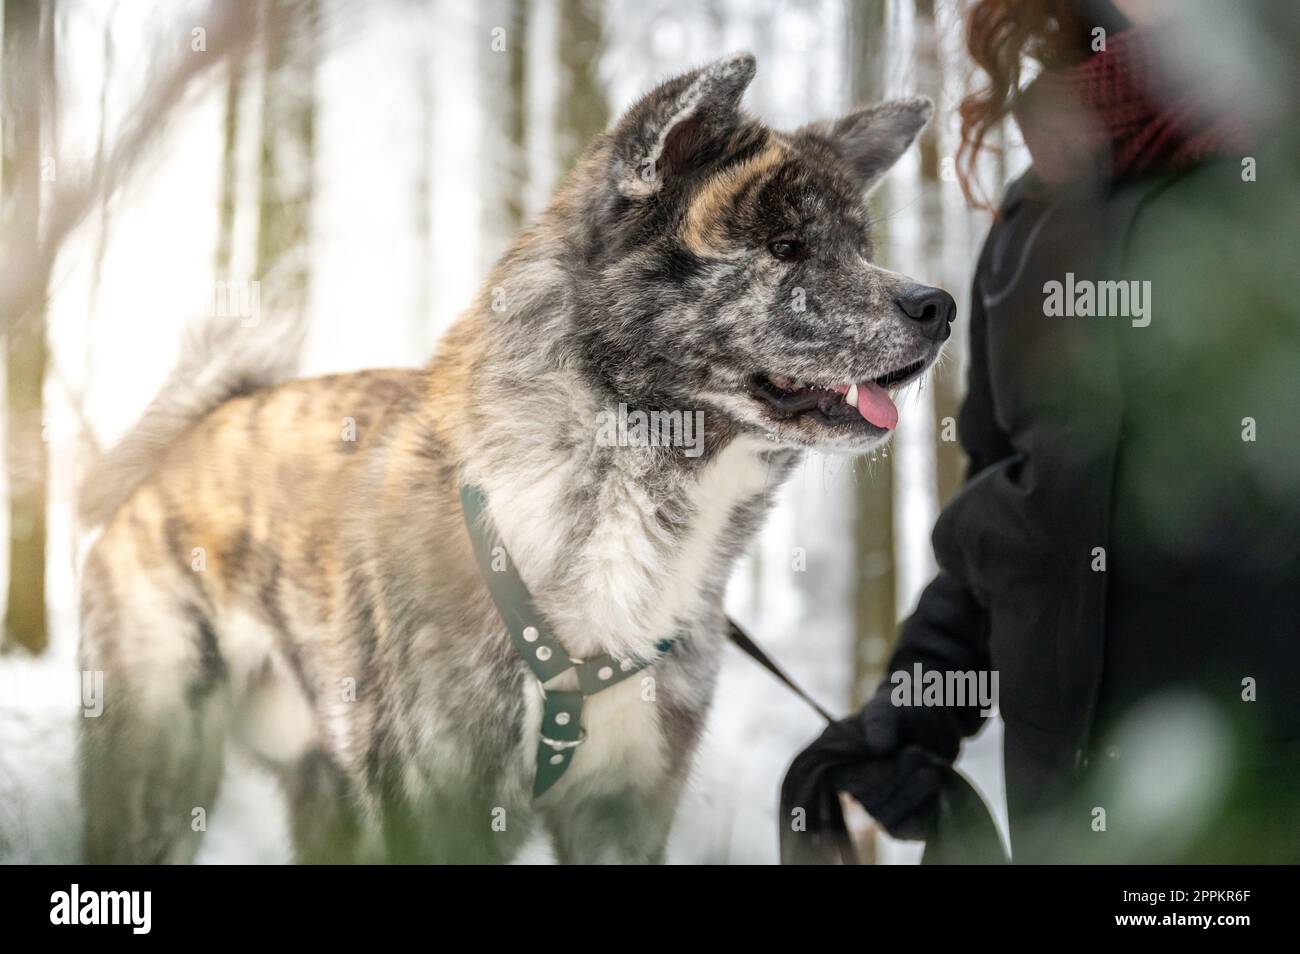 Akita inu perro con piel gris y naranja está de pie junto a su amo femenino con el pelo rizado marrón durante el invierno con el bosque y la nieve en el fondo, rayo de sol Foto de stock